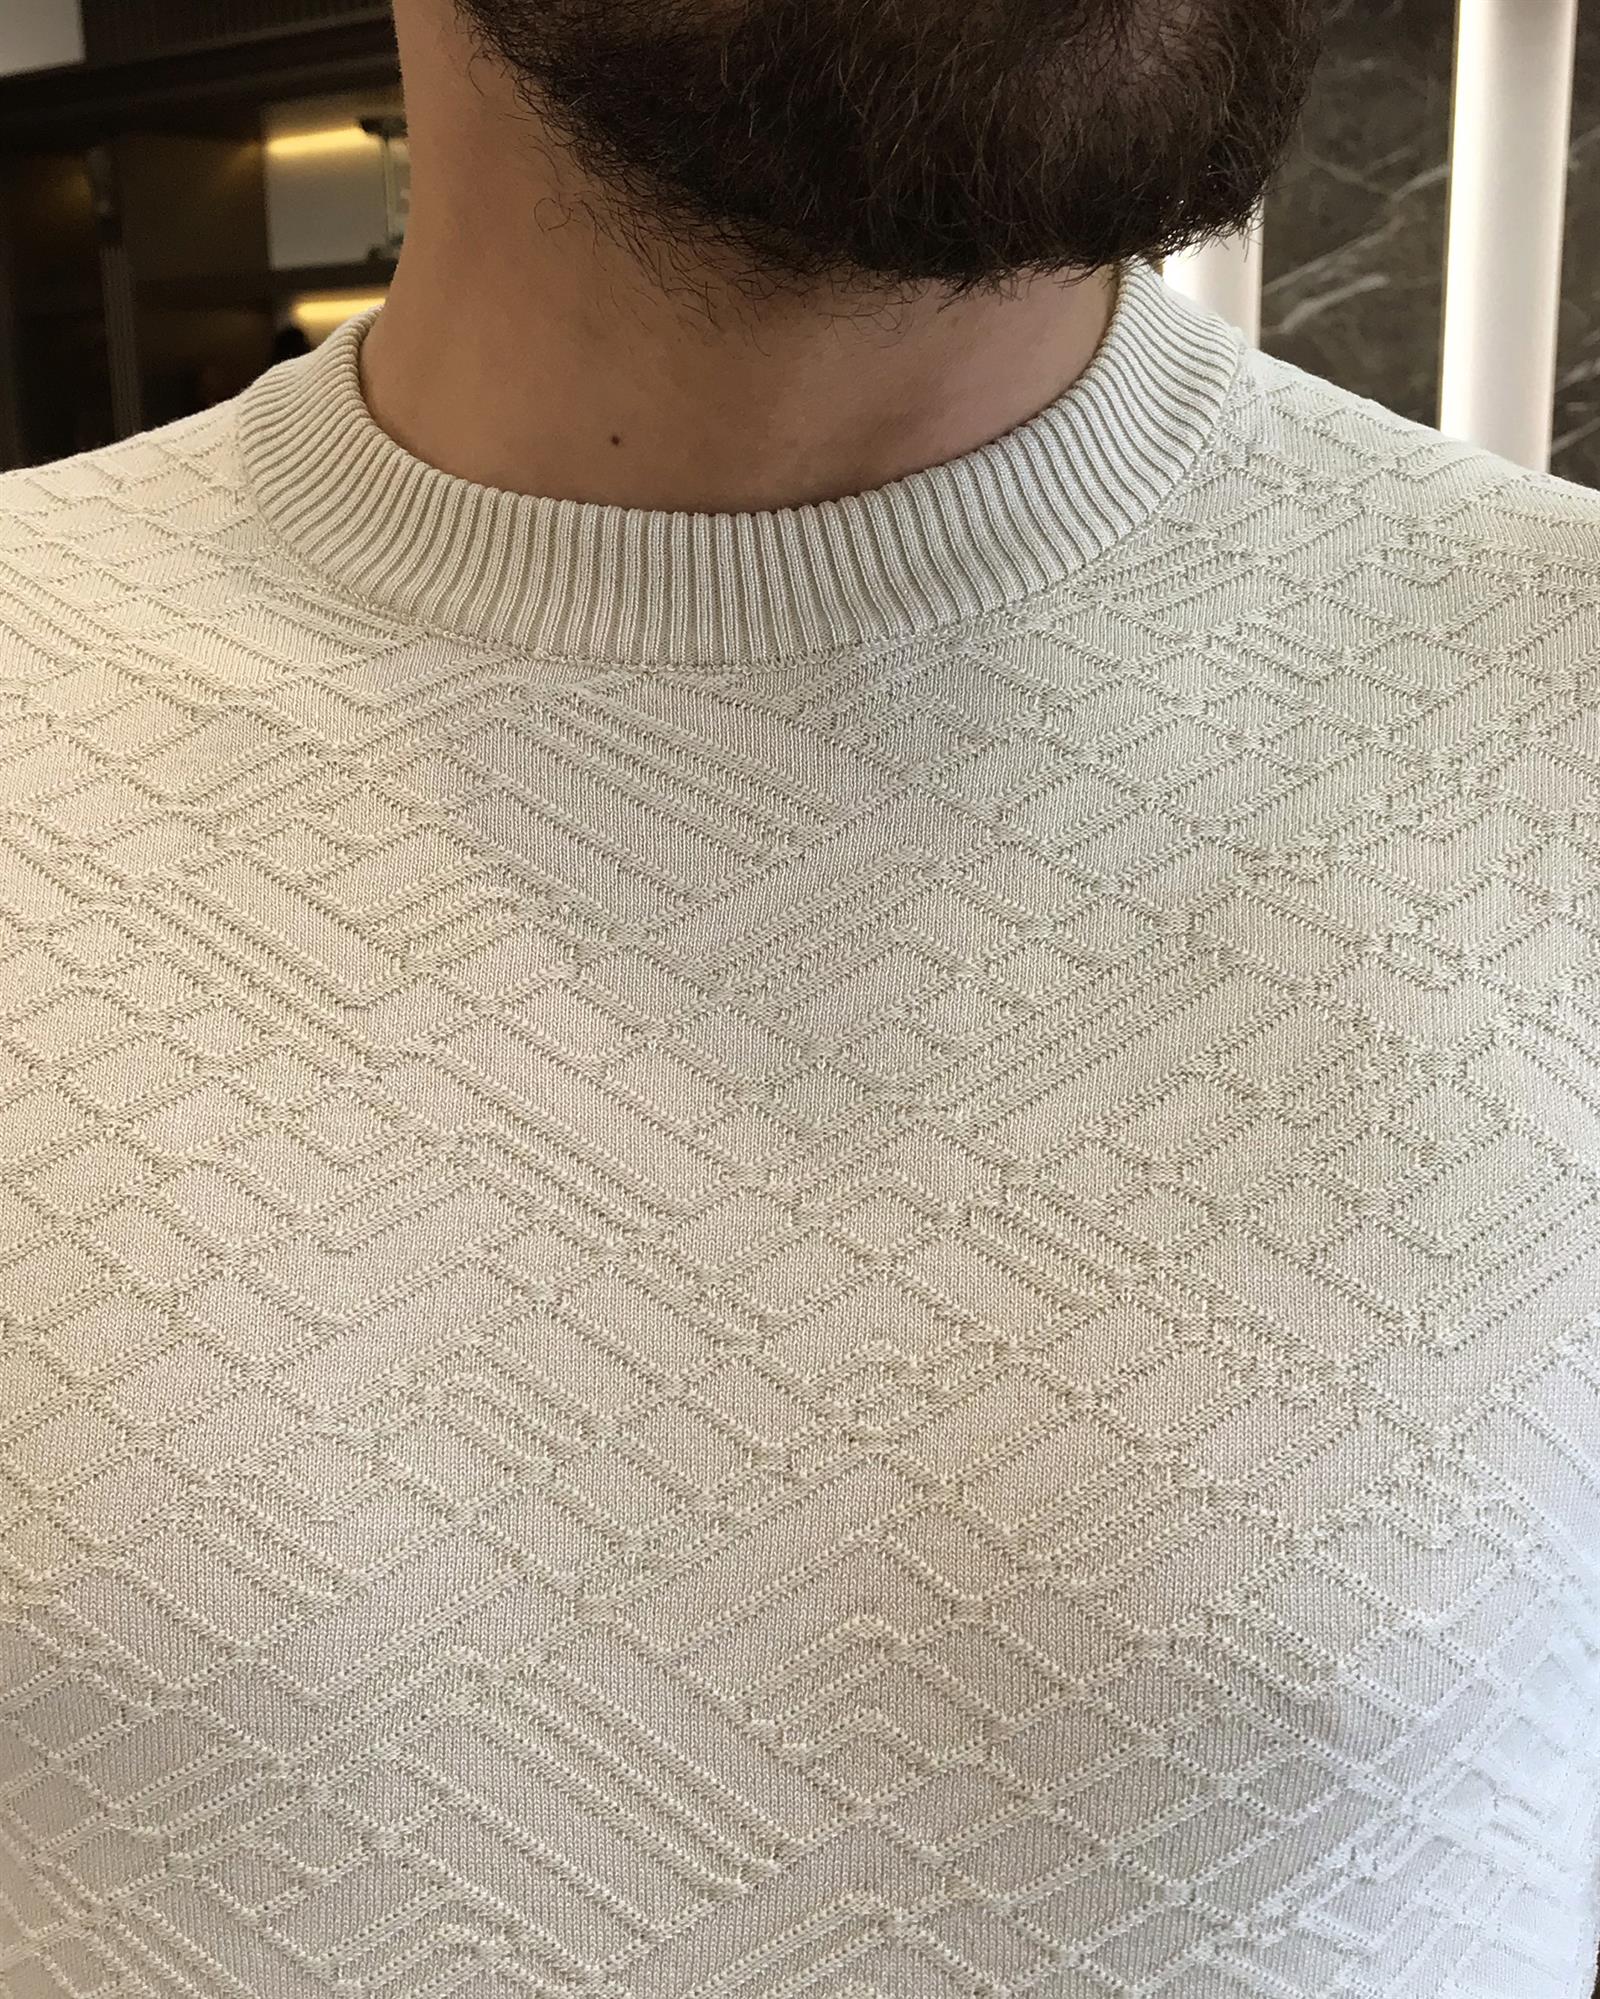 Italian style slim fit crew neck knit t-shirt ecru T9494